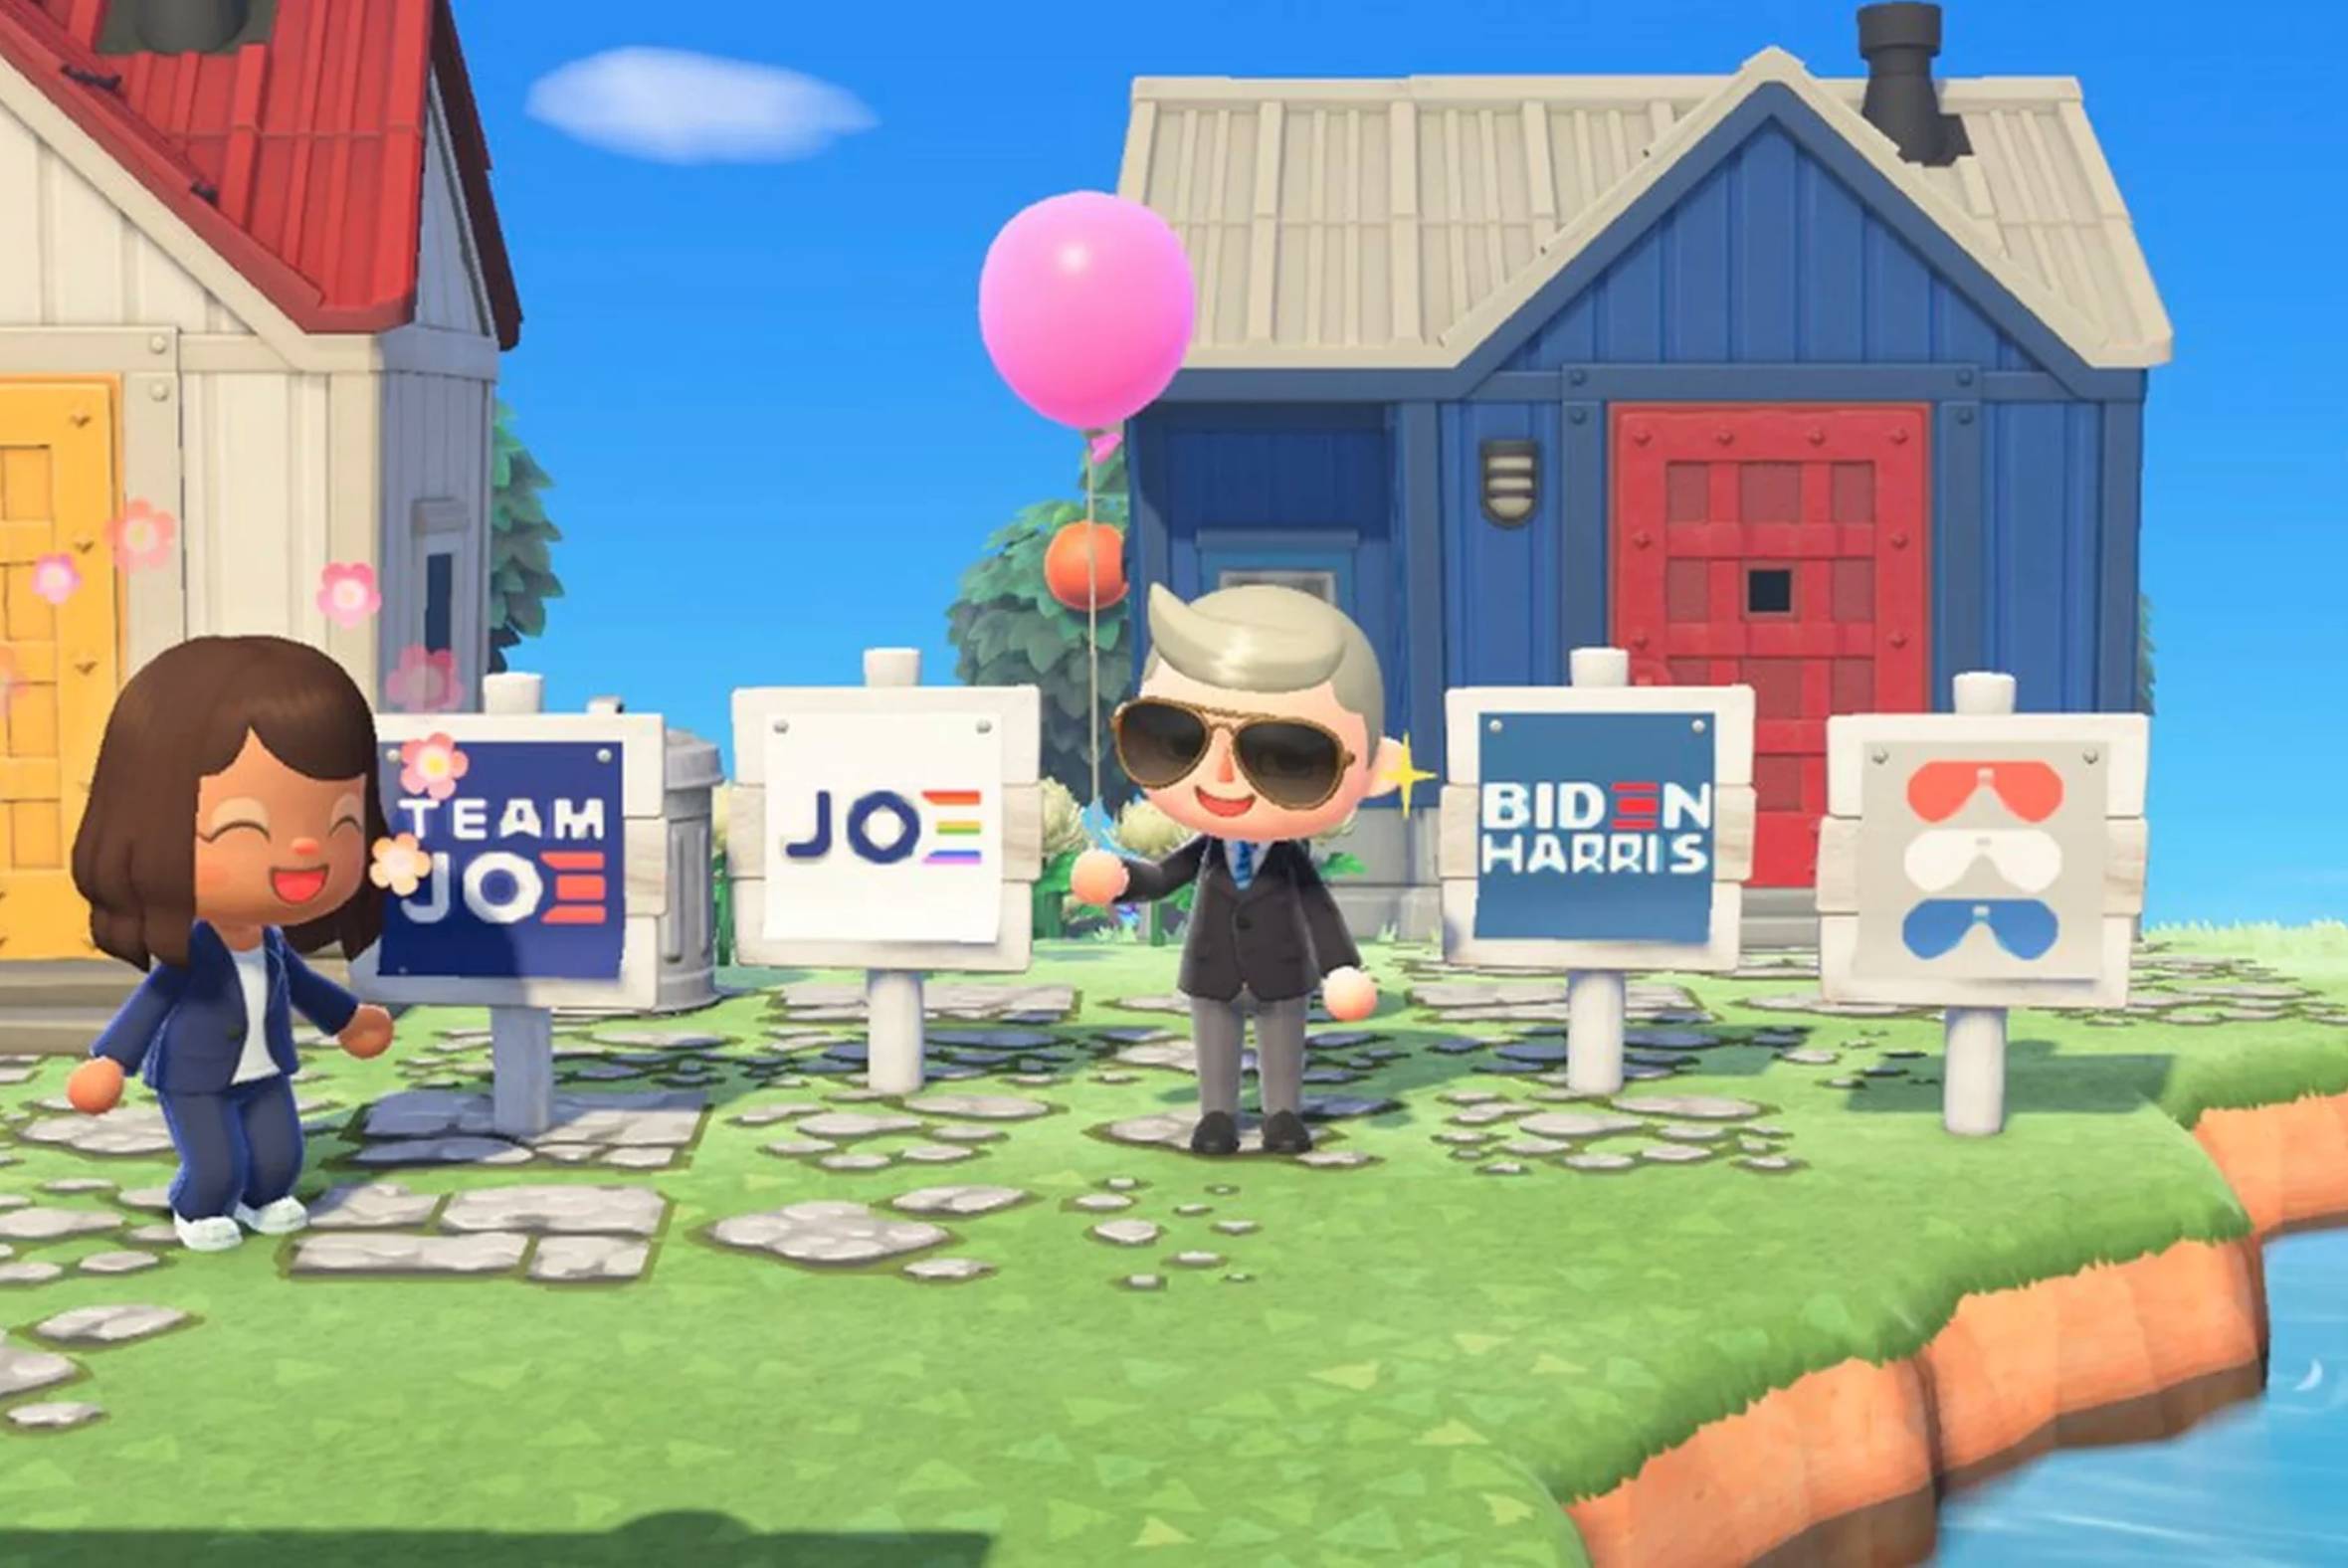 La campagne électorale américaine s'invite dans Animal Crossing